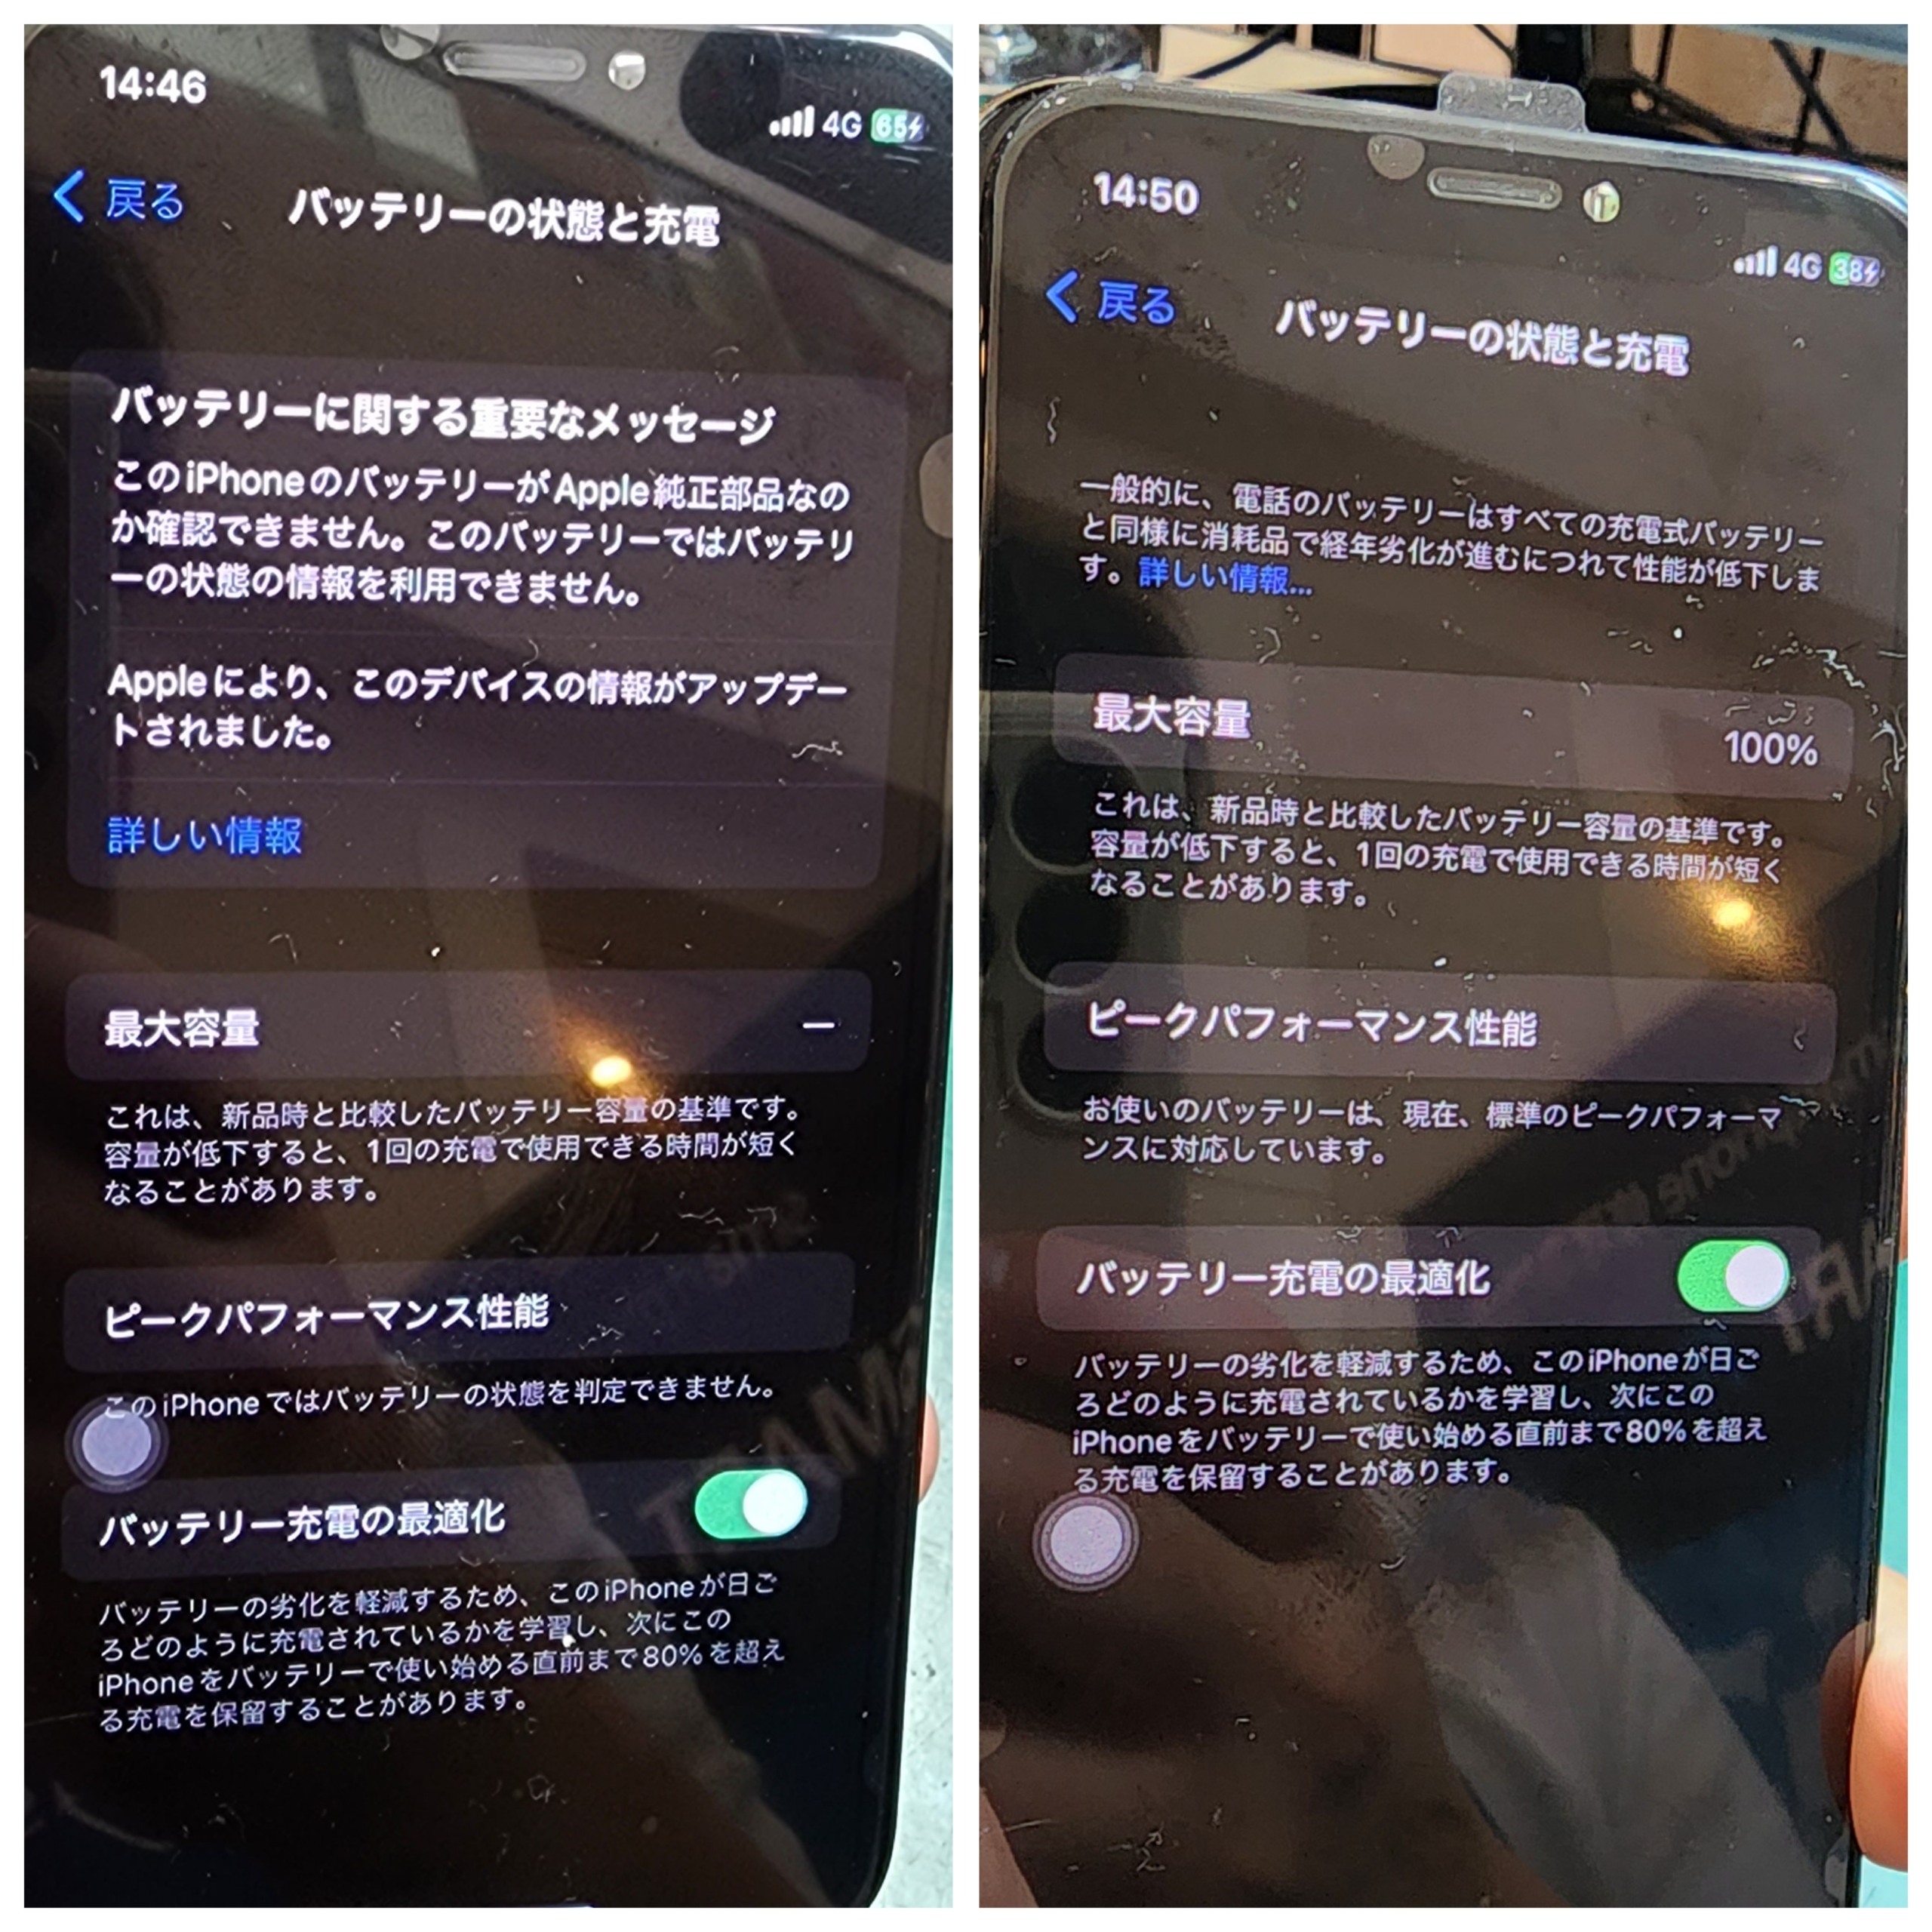 【本日の修理】iPhone XSバッテリー交換